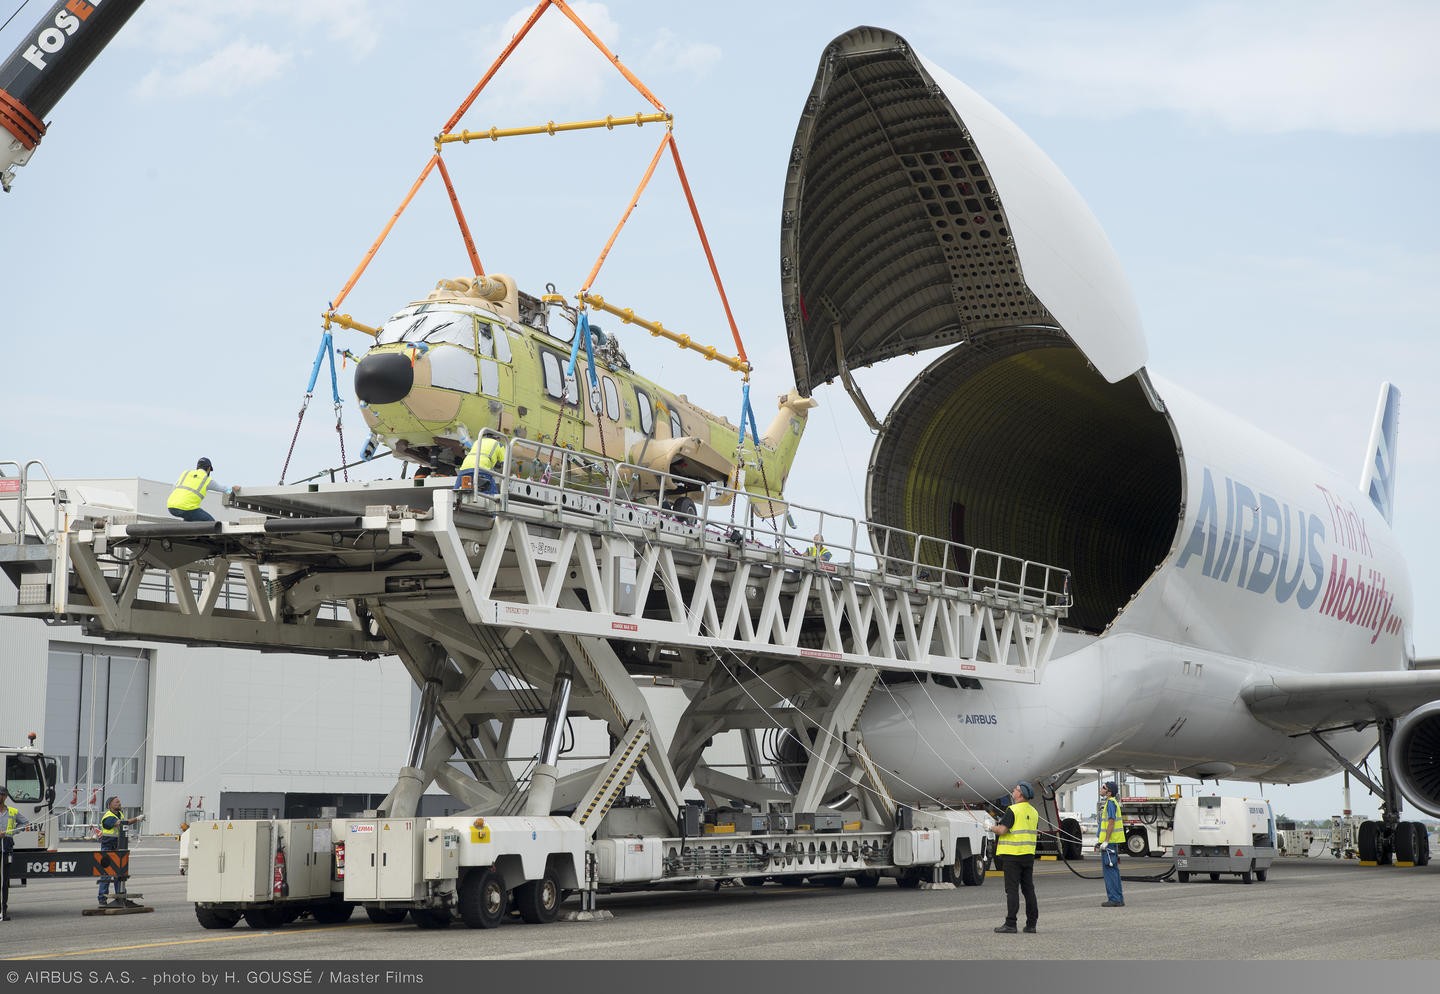 aeronave está disponível para companhias de frete como um meio para transporte de cargas de maiores dimensões, tendo um dos bagageiros de maior volume entre aviões civis ou militares atualmente — Foto: Airbus/Divulgação